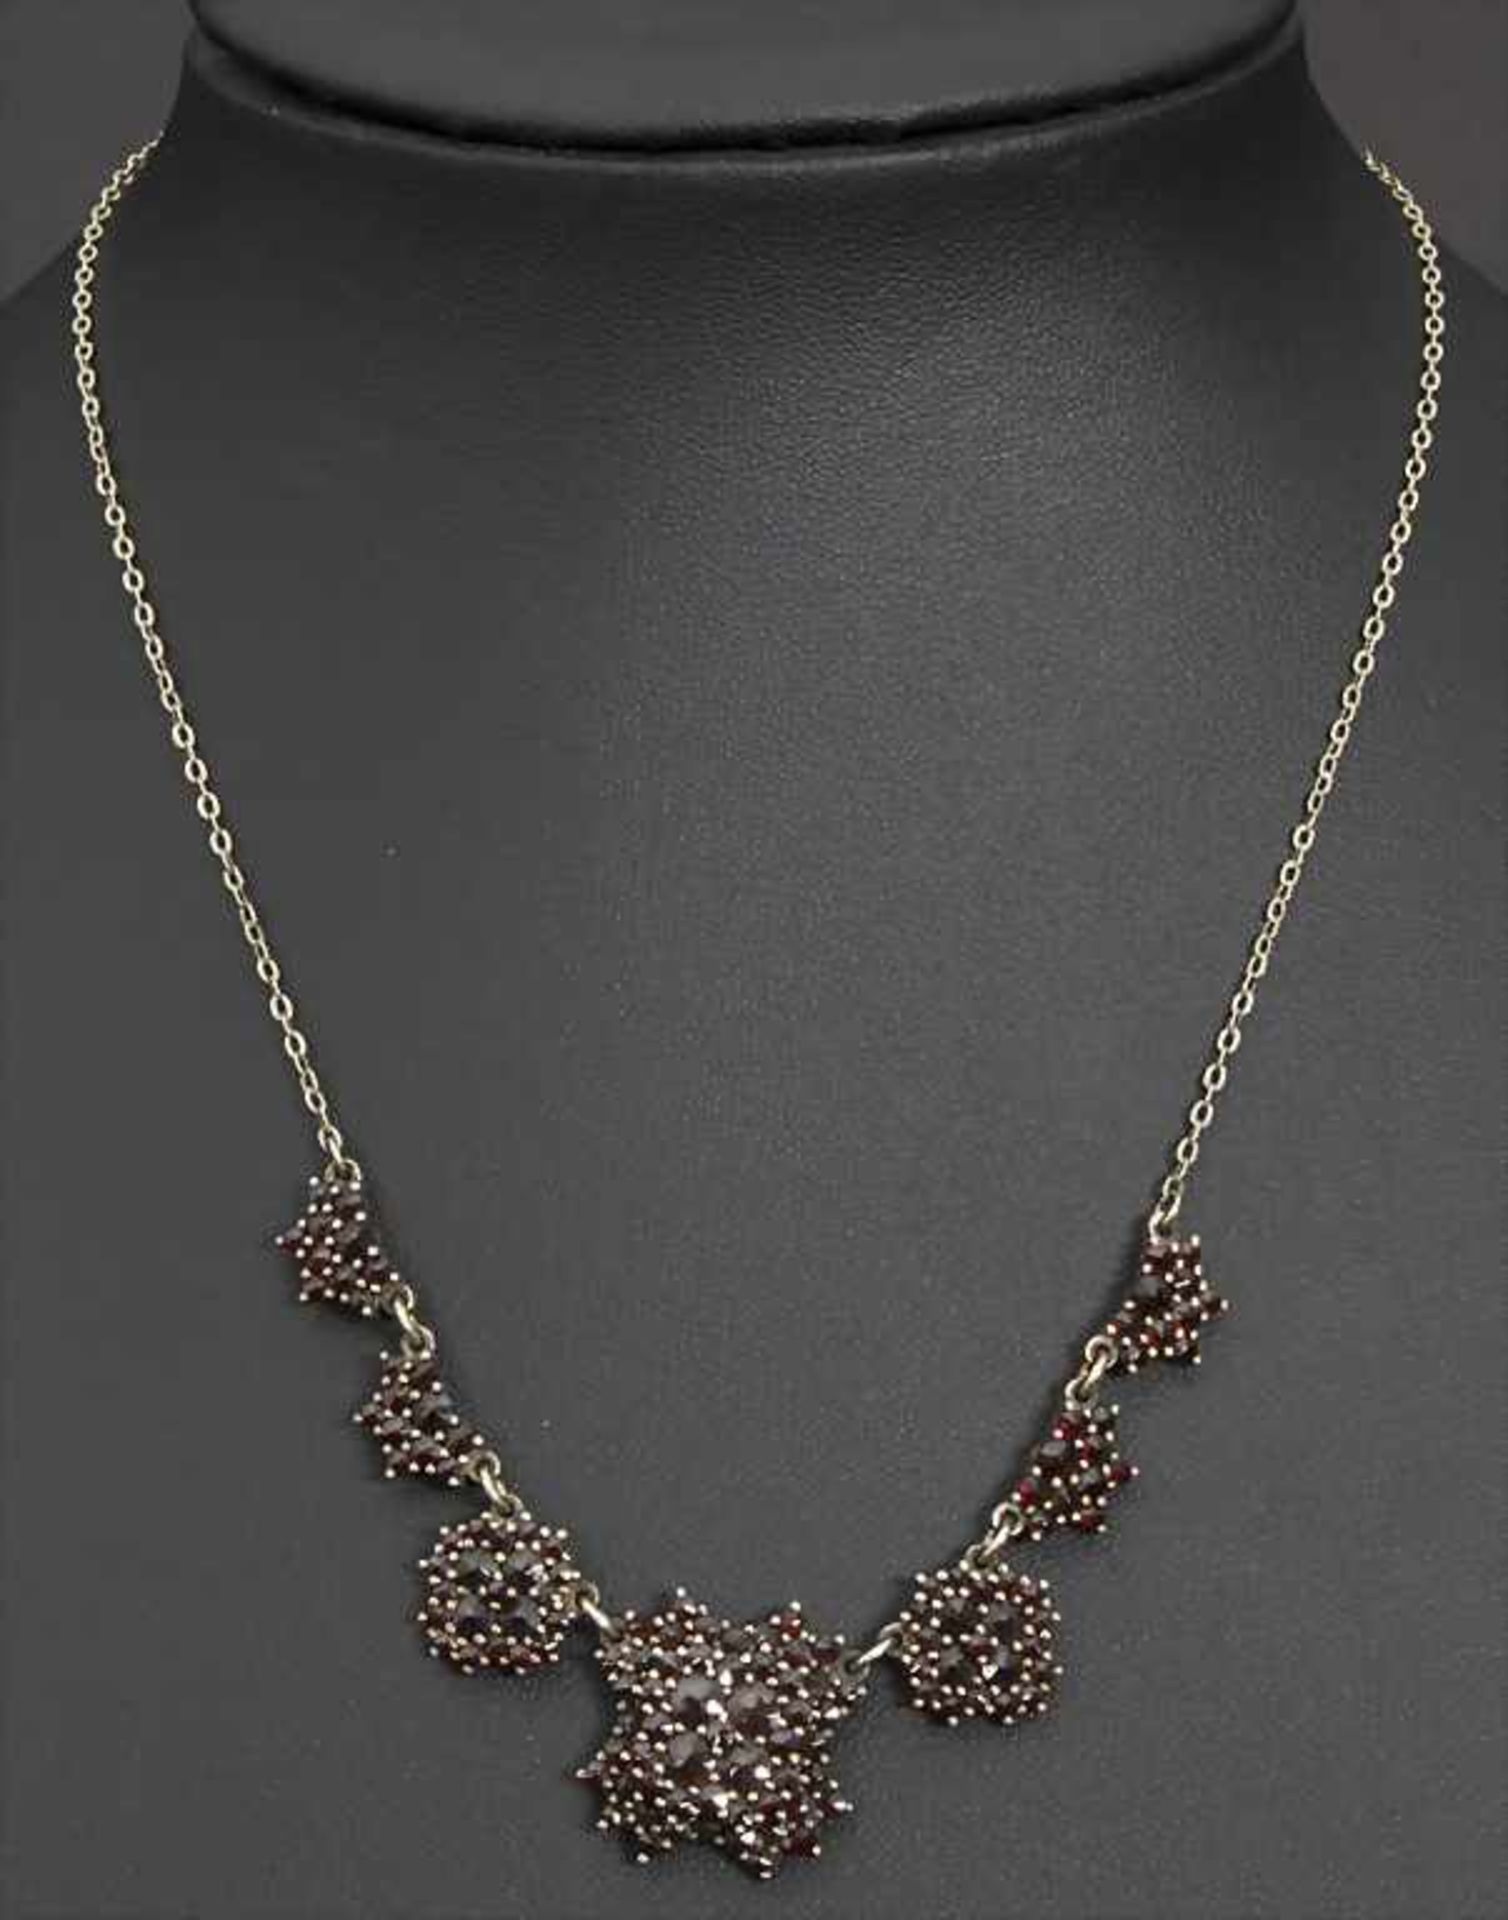 Granat-Collier / A garnet necklace - Bild 2 aus 6